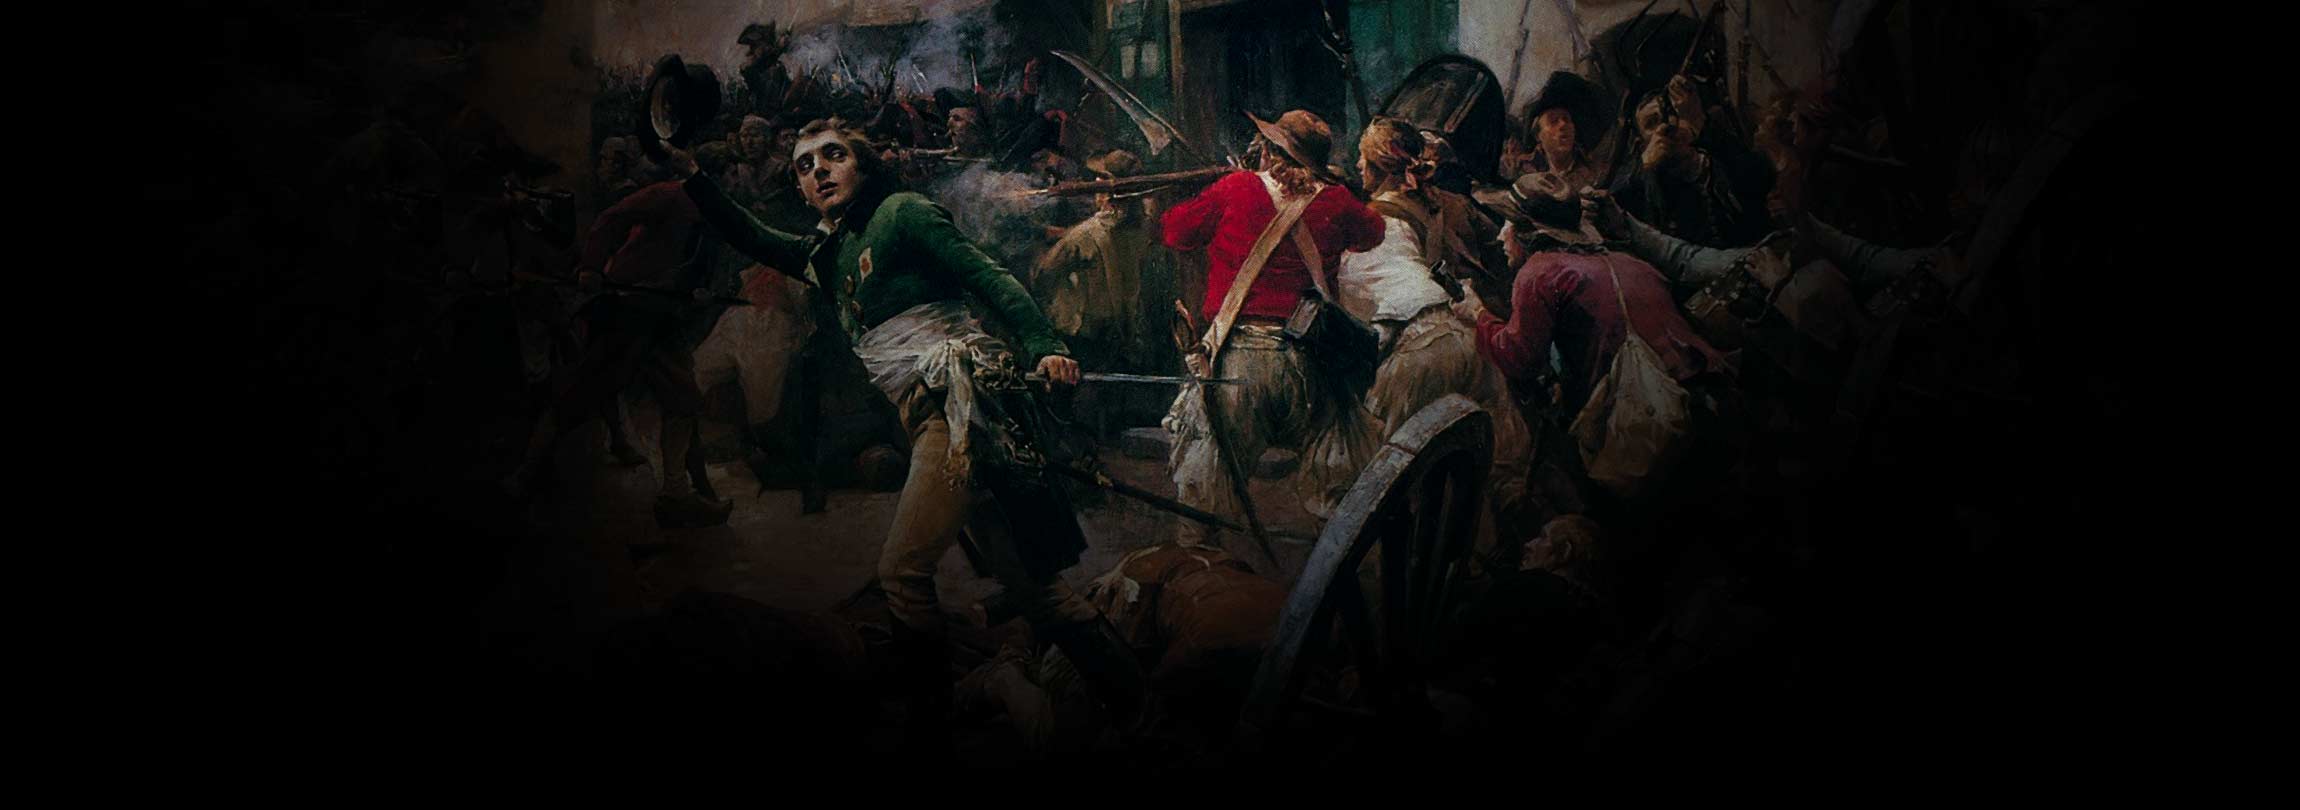 O primeiro genocídio moderno ocorreu na Revolução Francesa